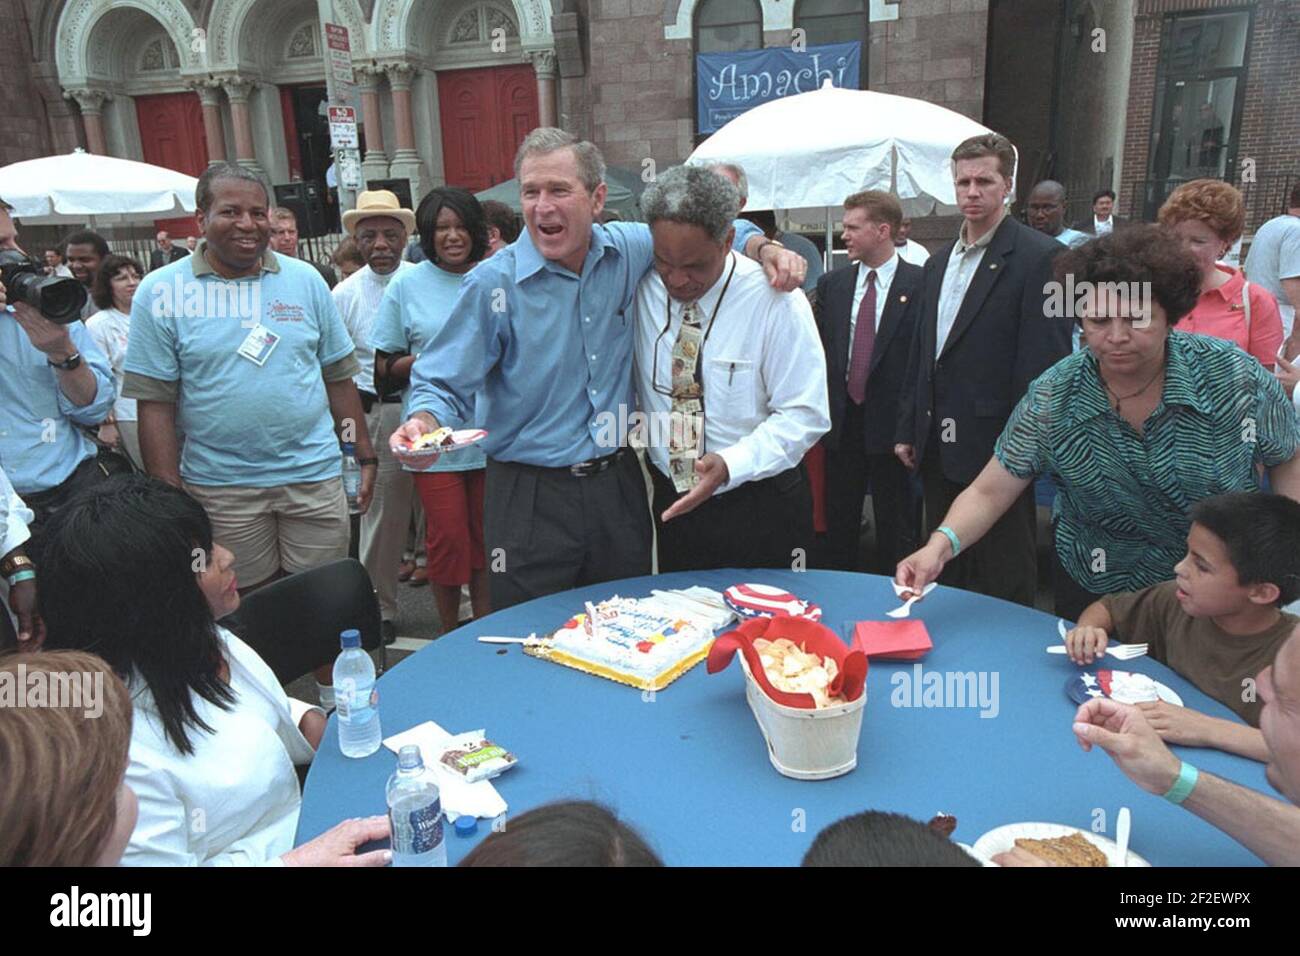 Le président George W. Bush passe le gâteau d'anniversaire avec le maire de Philadelphie John Street lors d'une célébration du jour de l'indépendance. Banque D'Images